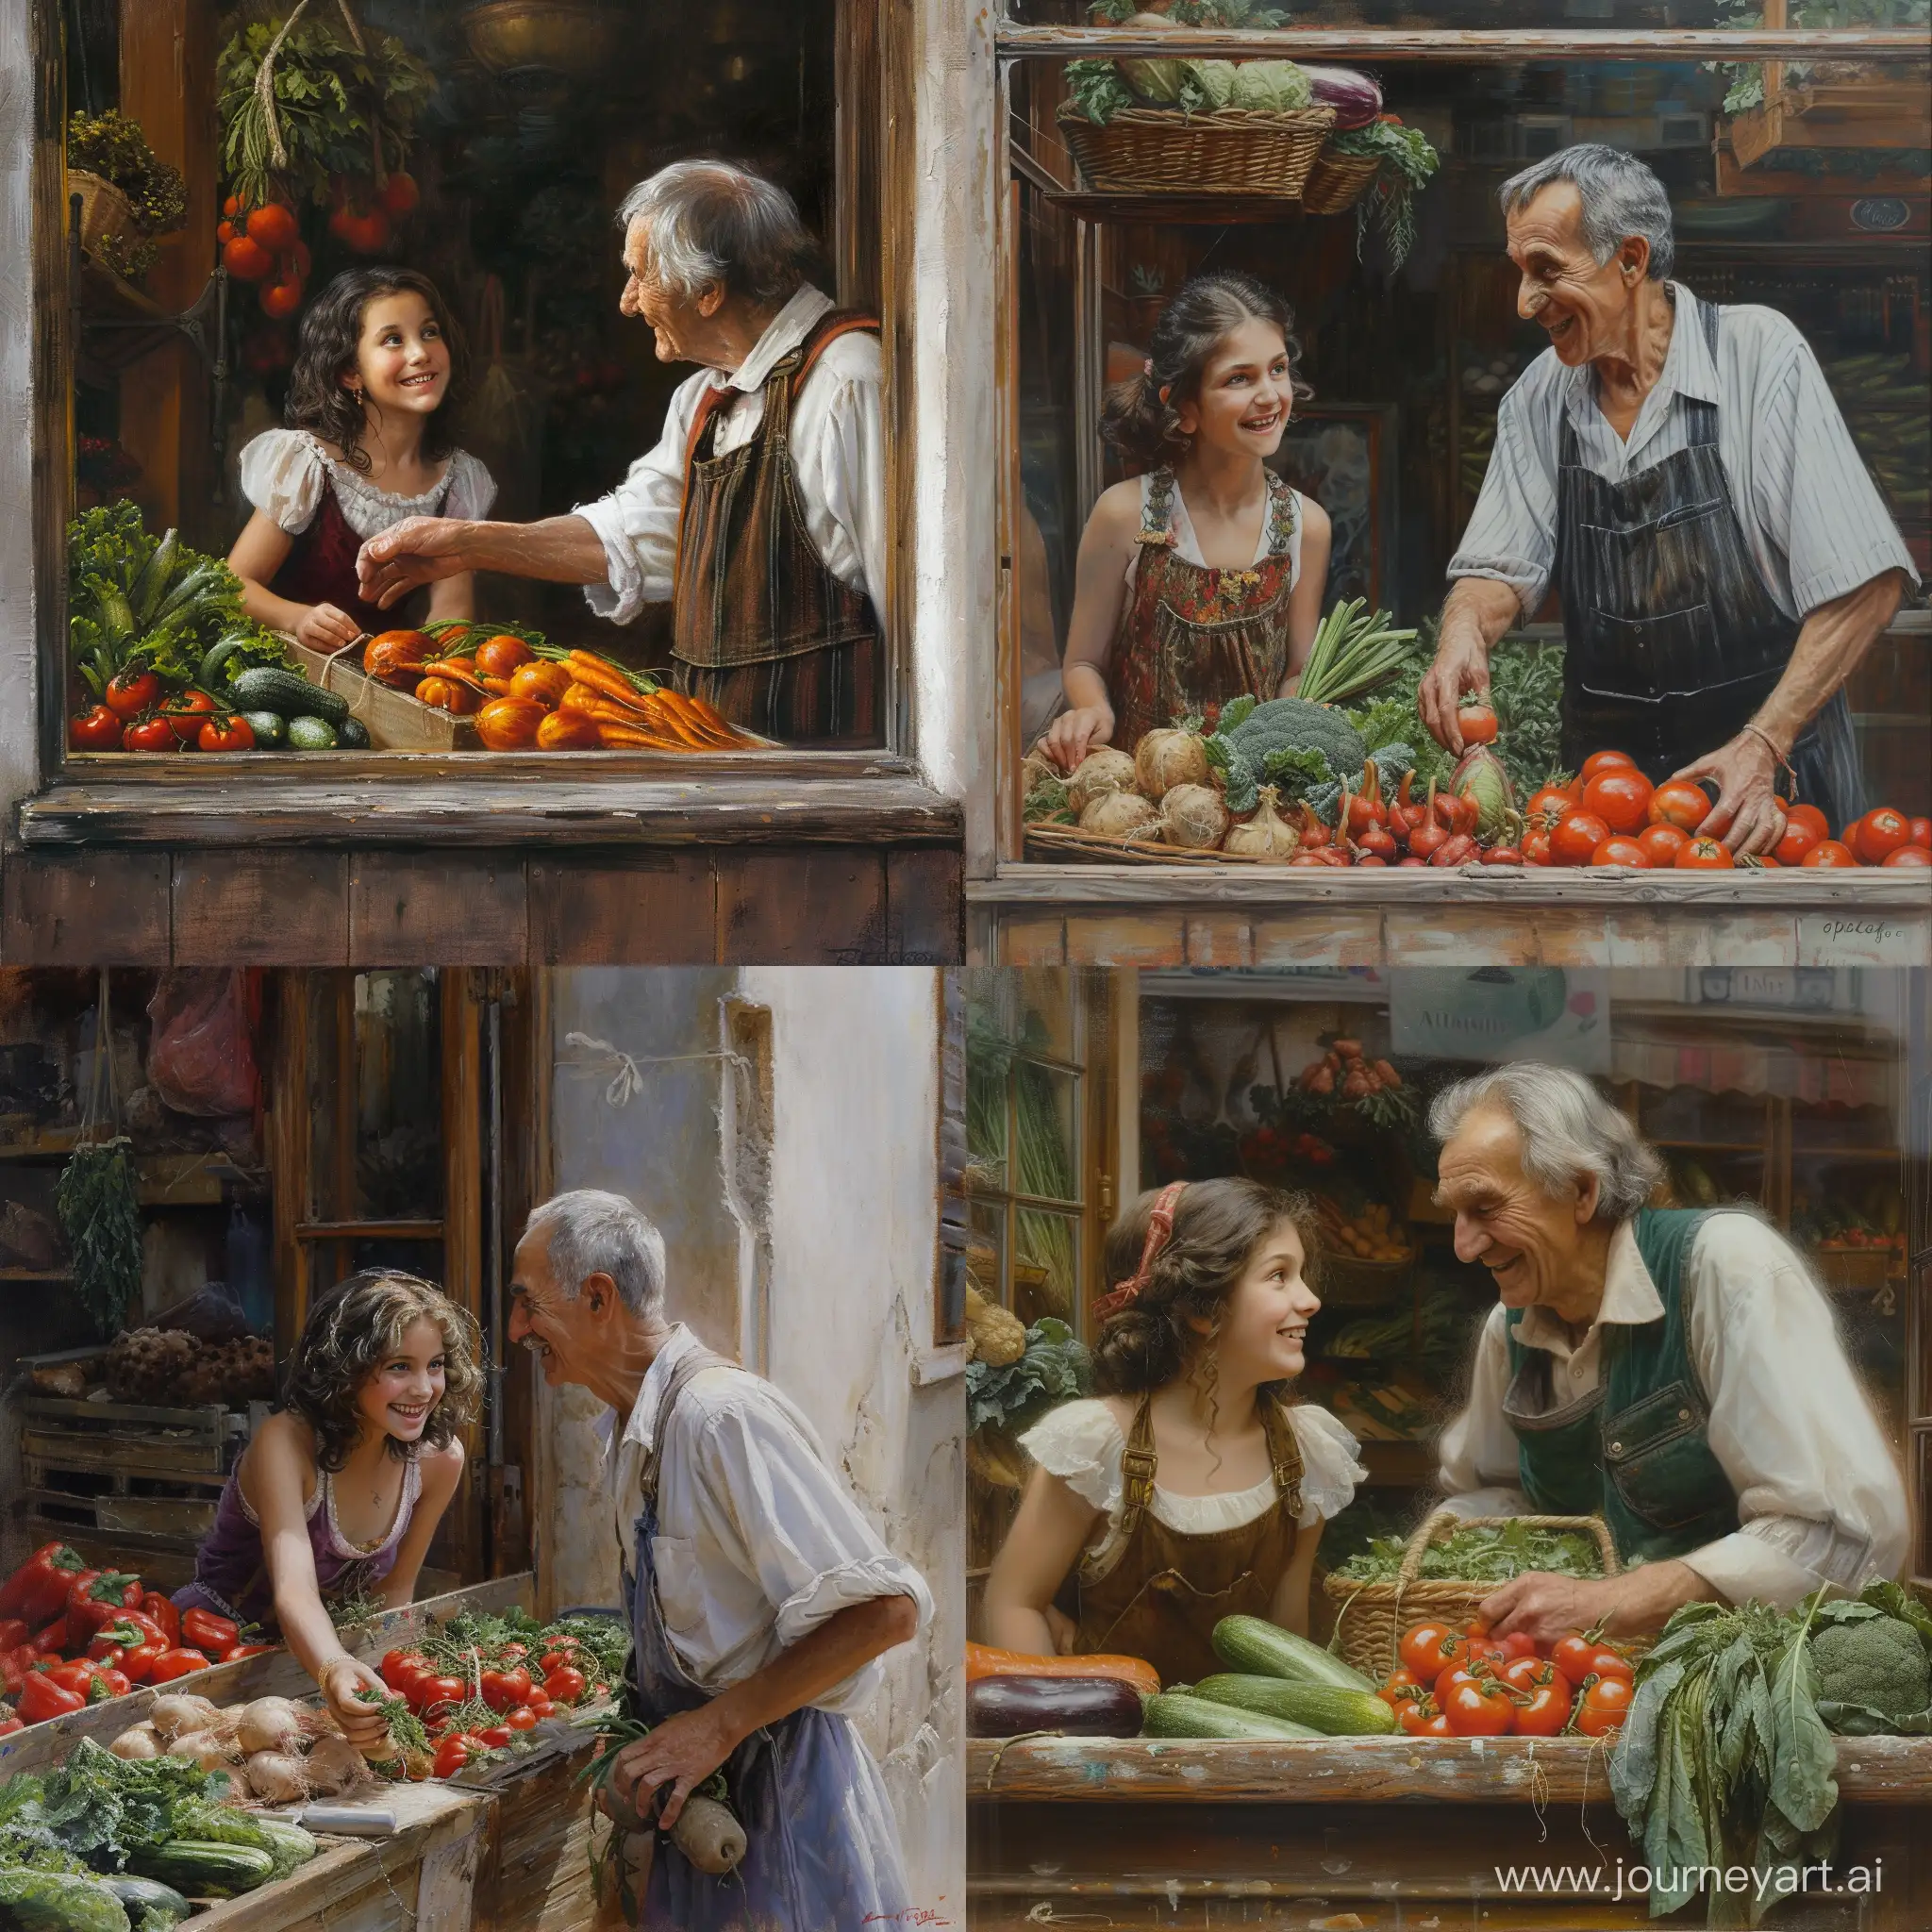 Chic-12YearOld-Girl-Picking-Fresh-Vegetables-with-Smiling-Elderly-Seller-Vibrant-Market-Scene-Painting